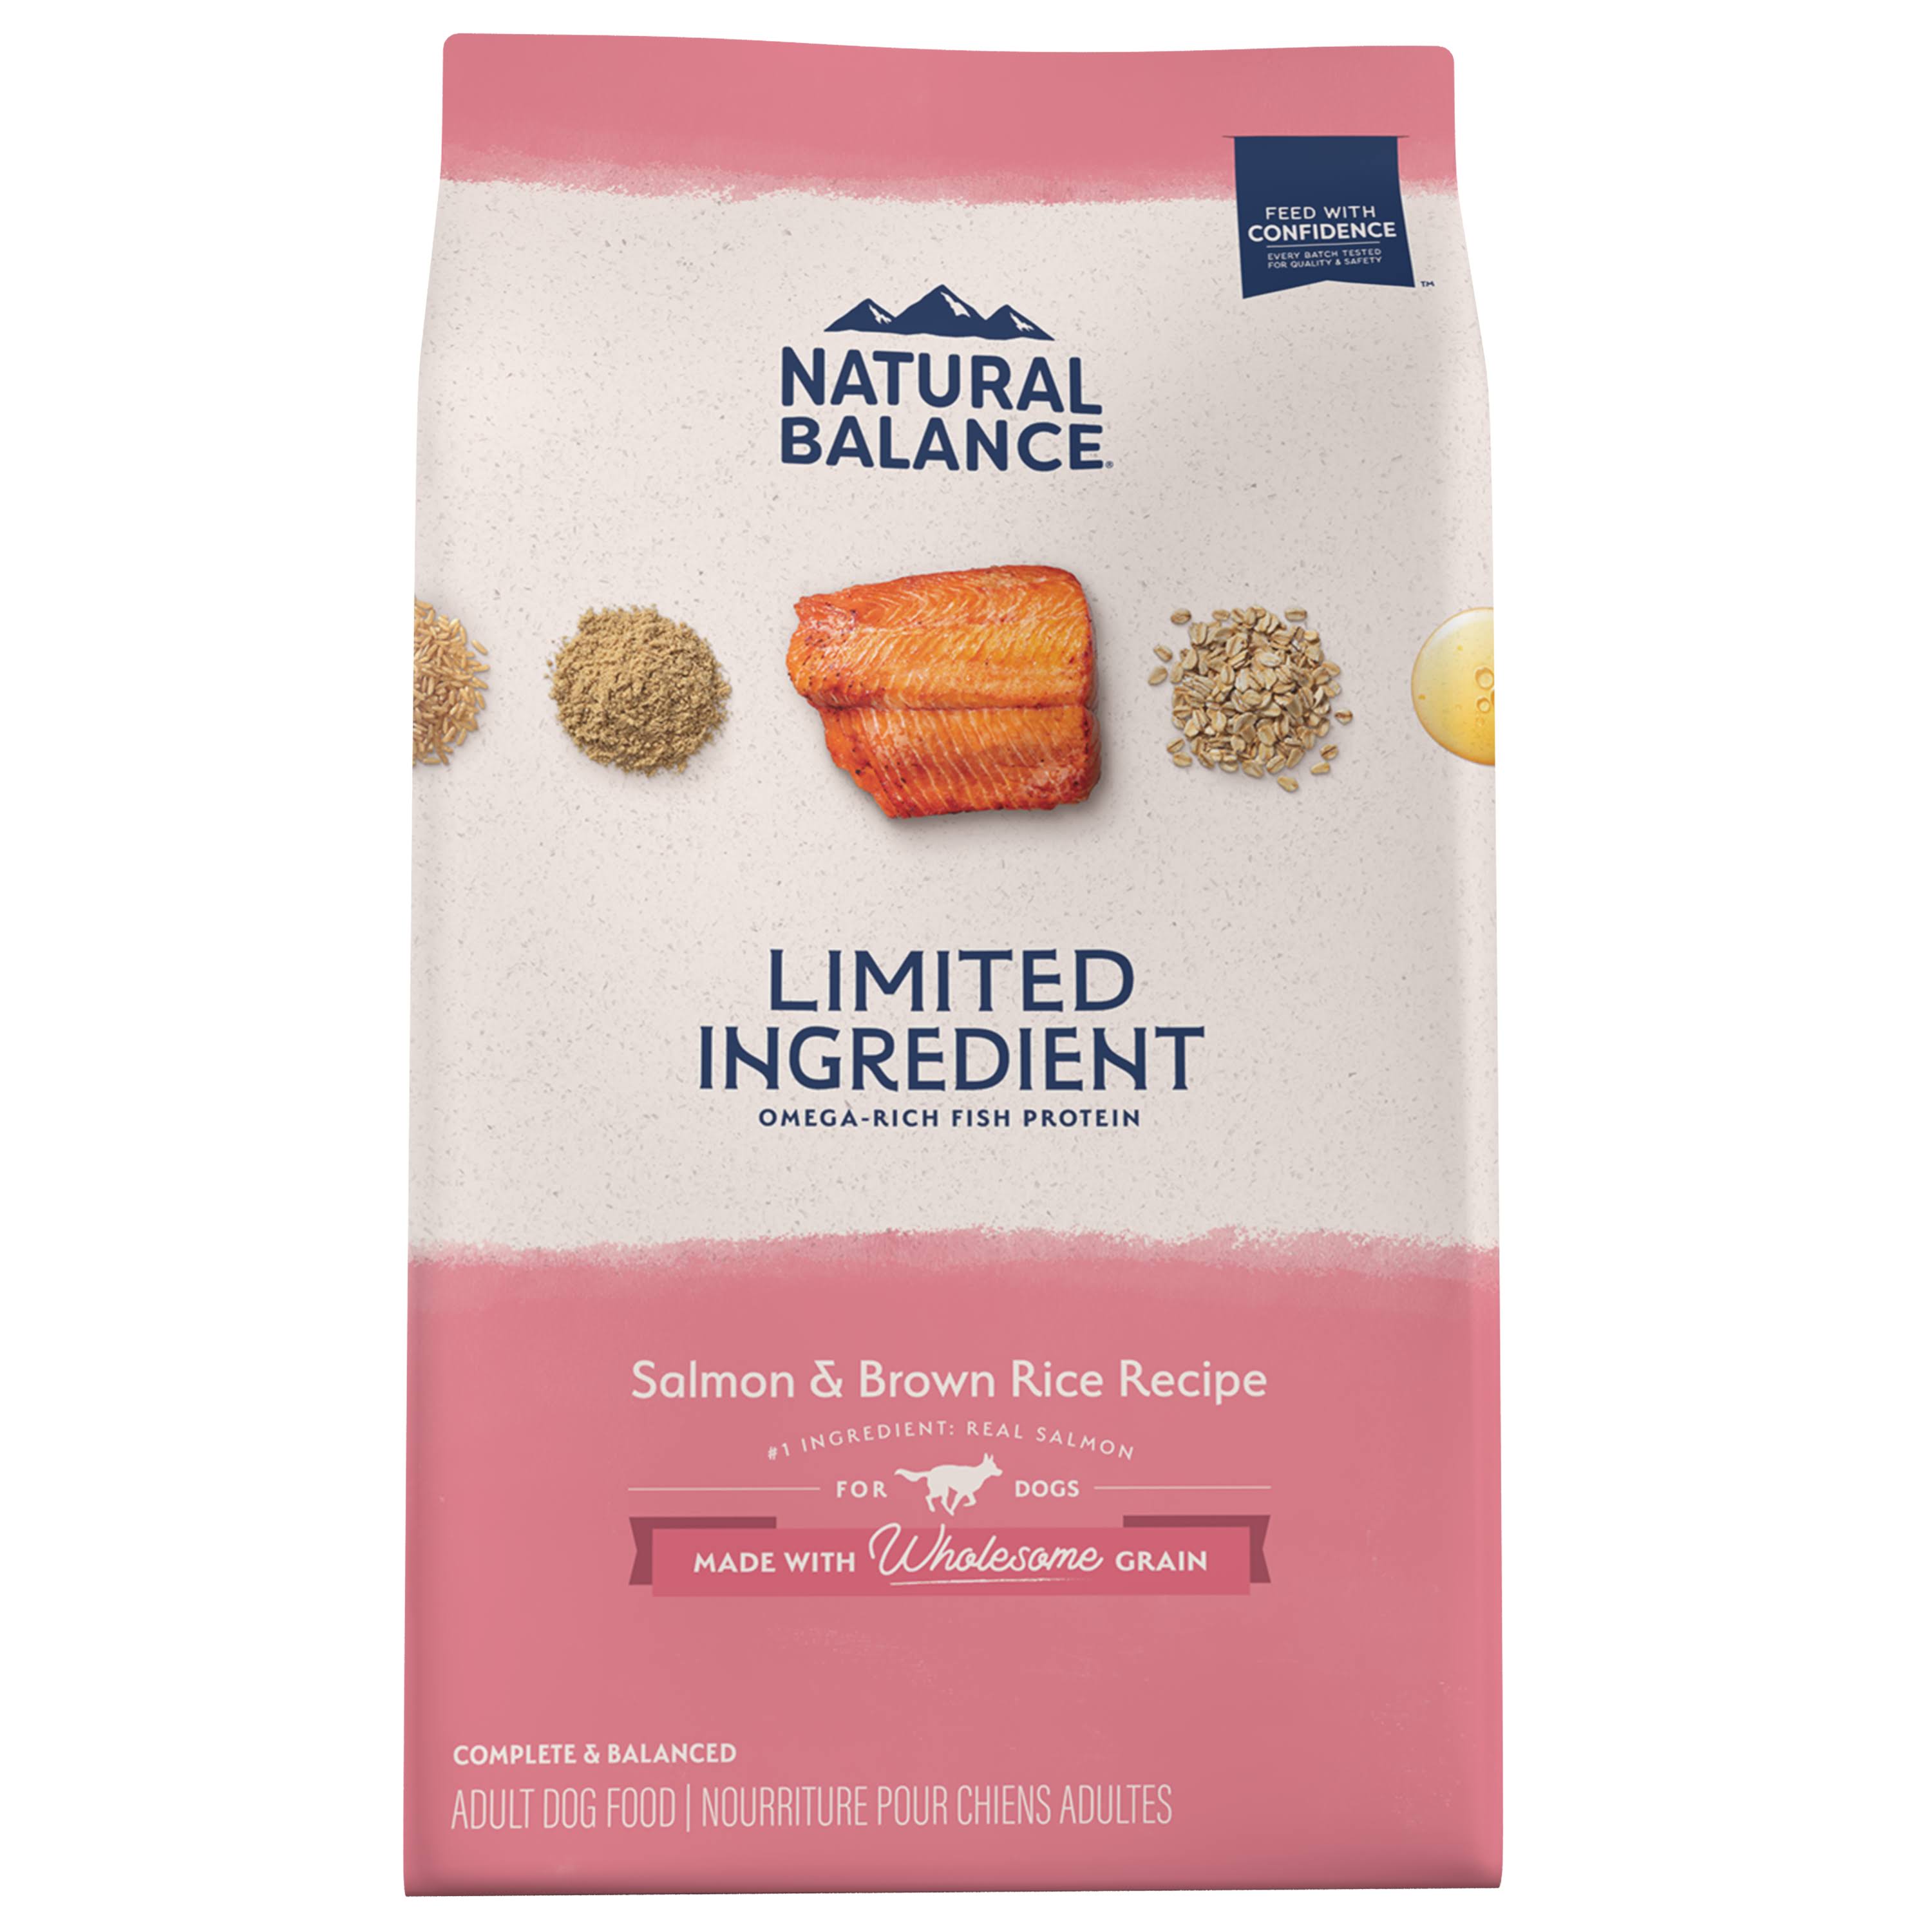 Natural Balance Limited Ingredient Salmon & Brown Rice Recipe